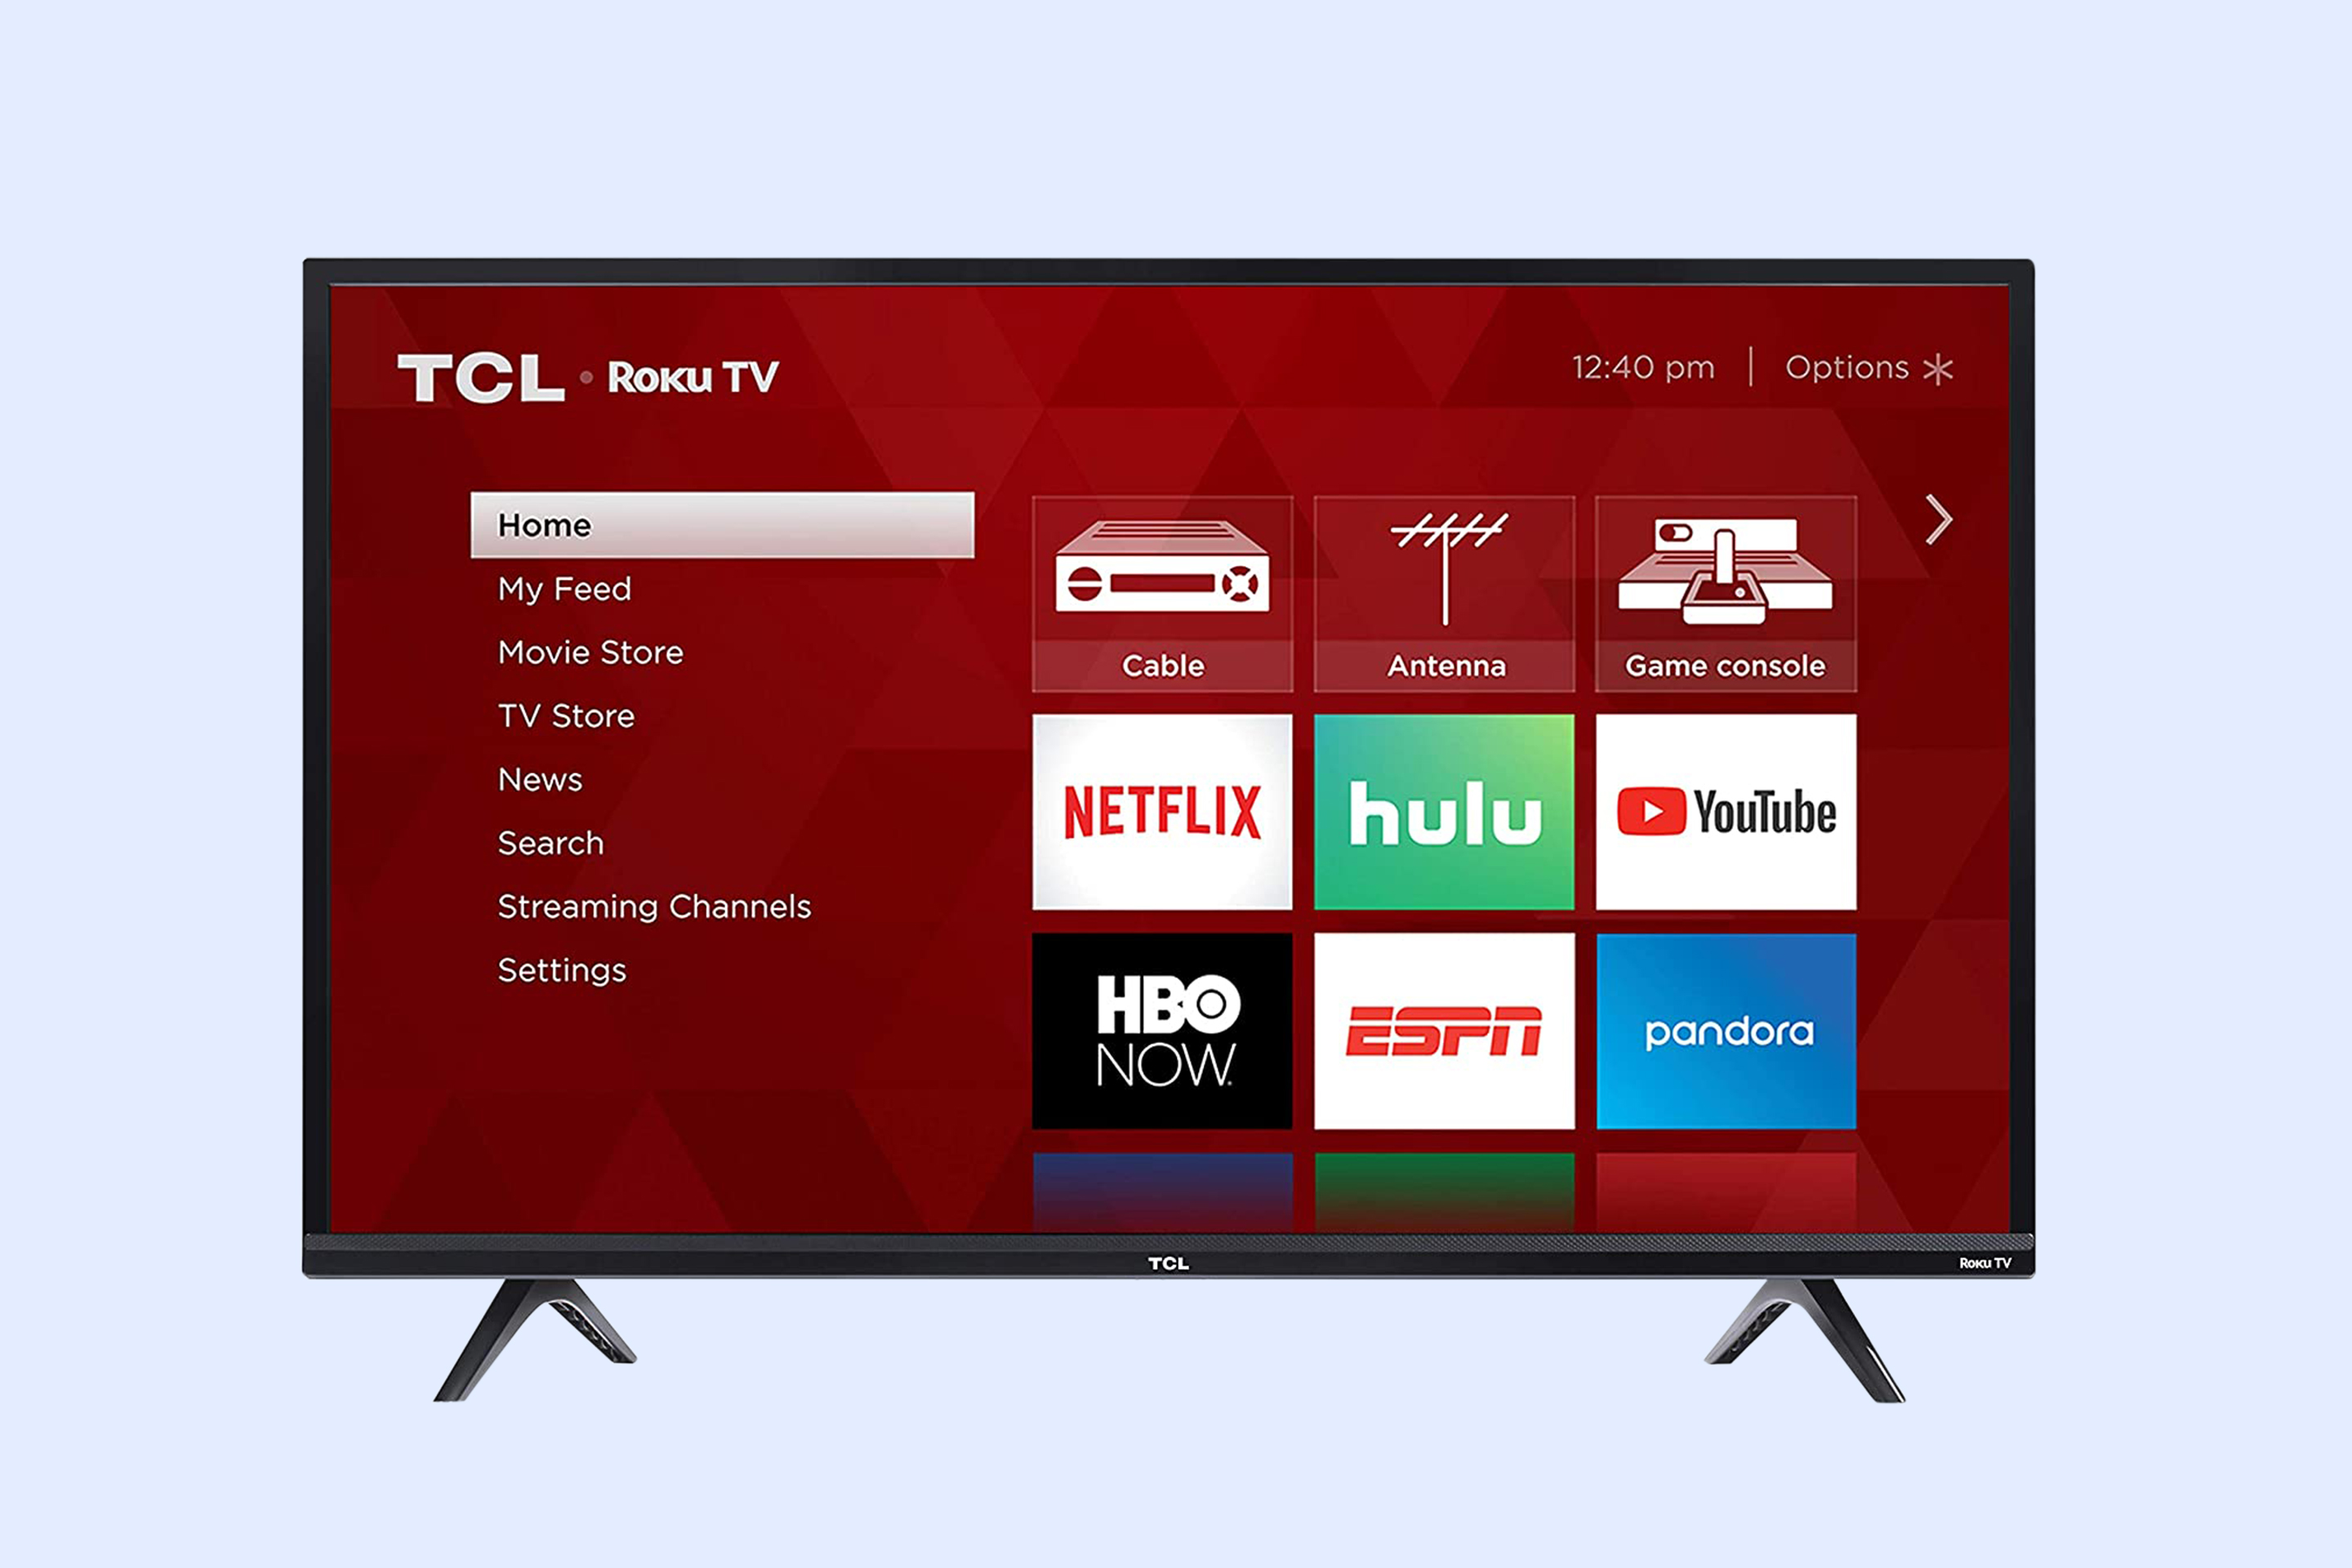 TCL Smart Roku TV Displaying Roku Home Page